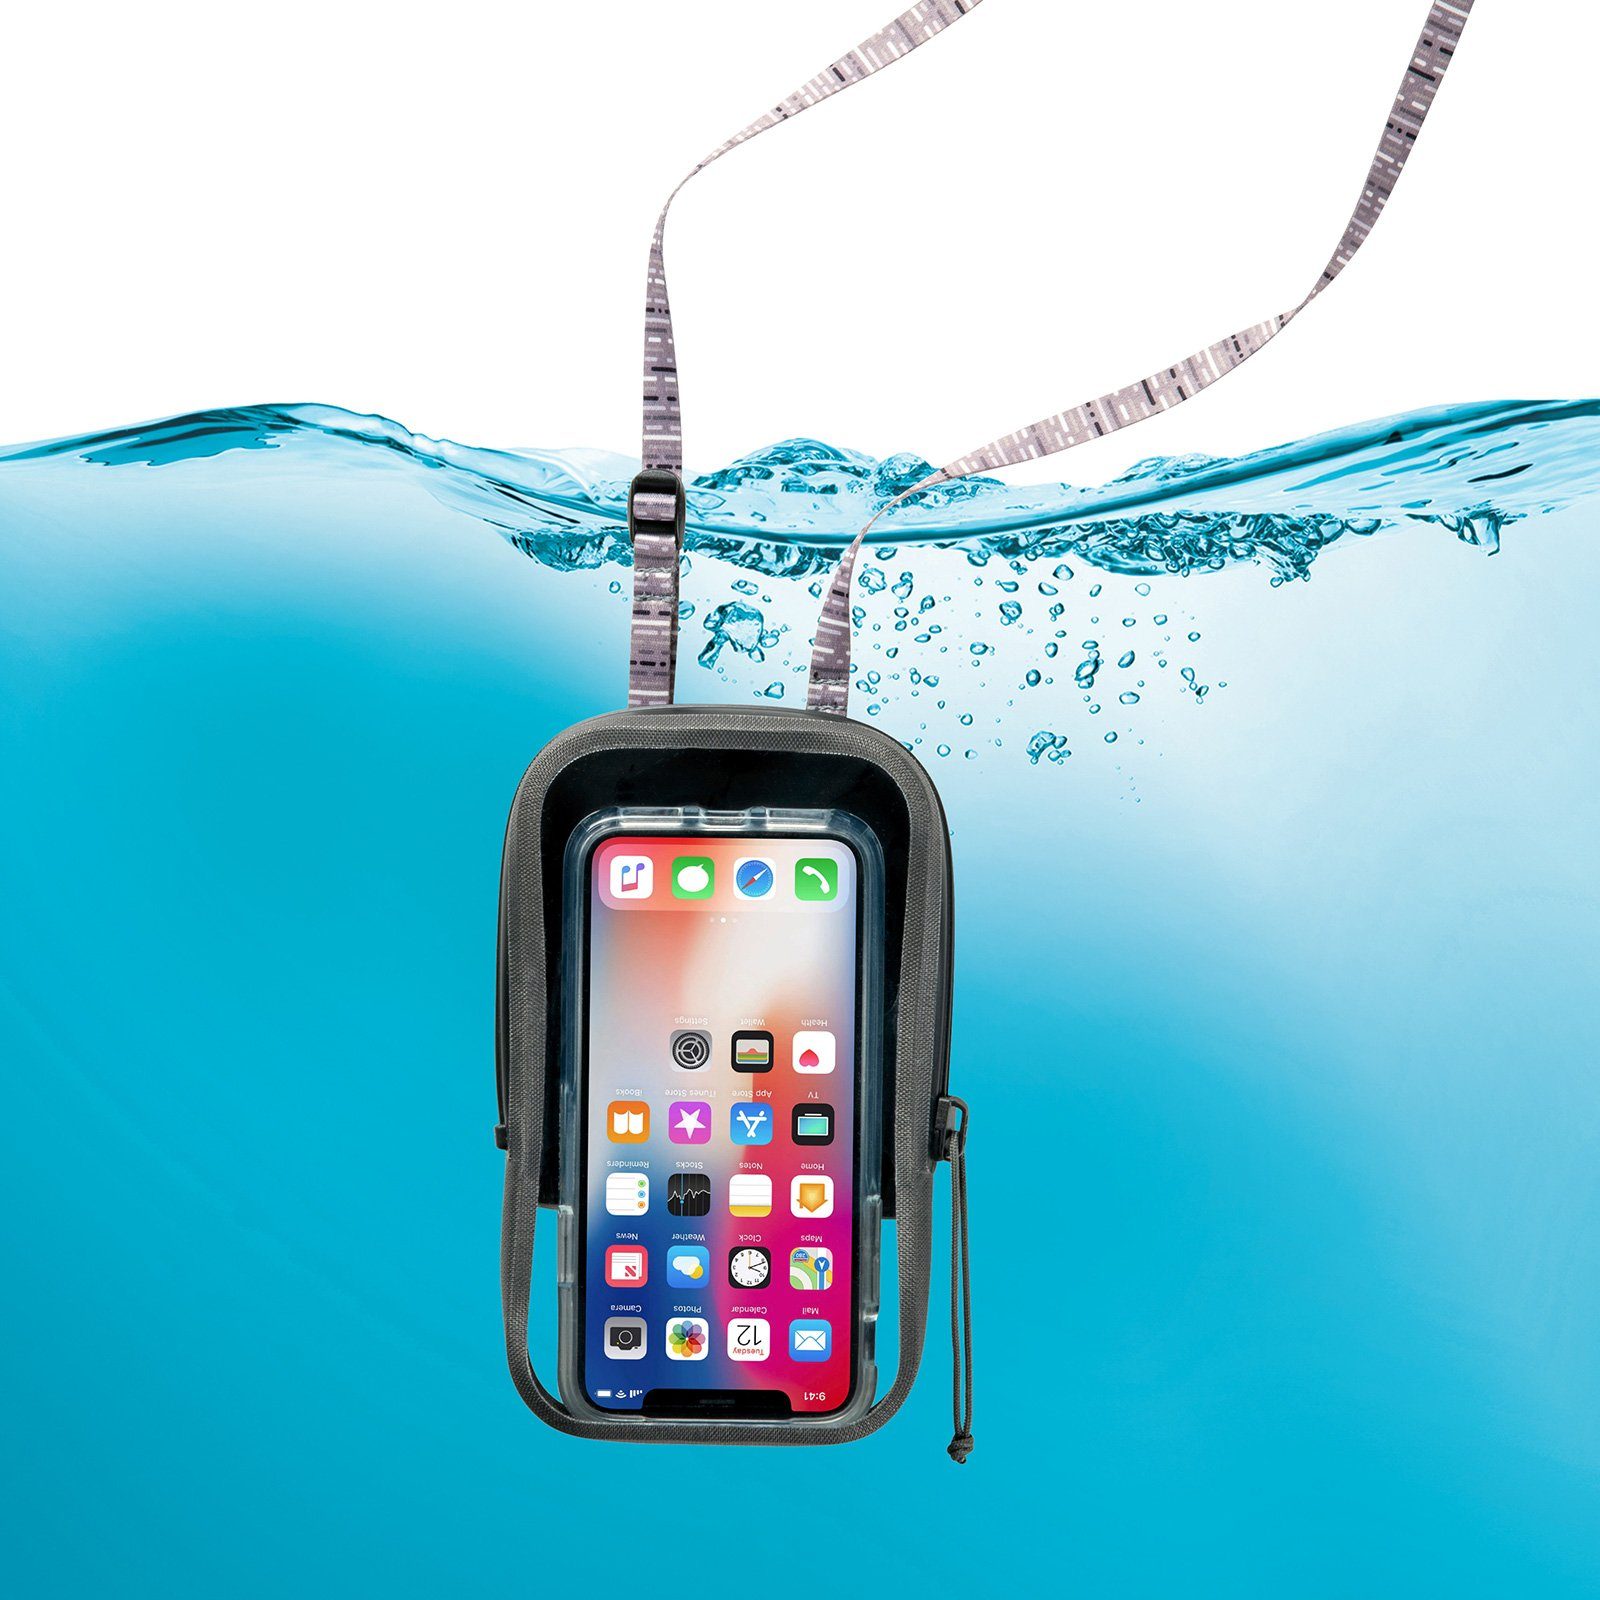 Hülle Schutz Wasserdichte Cover Handy, RunOff Handytasche Unterwasser Nite Case Ize Tasche 7'